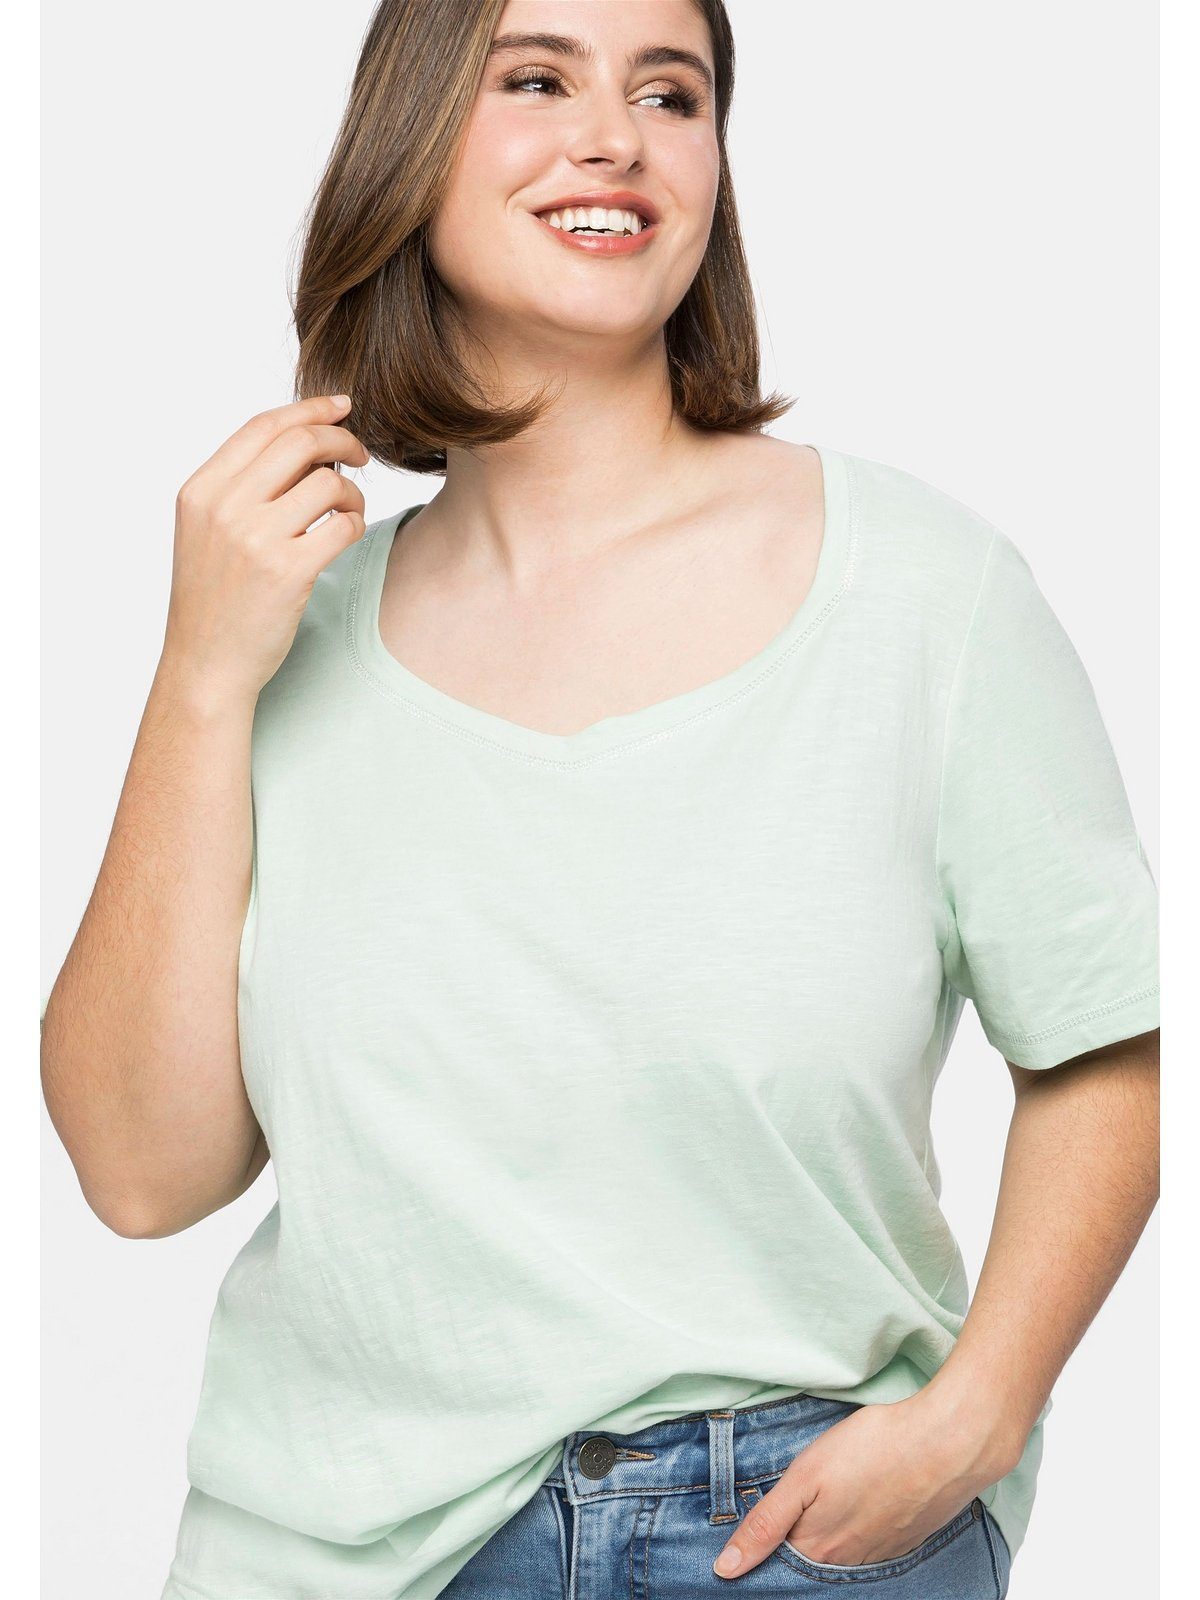 Sheego T-Shirt Große Ziernähten, Größen silberfarbenen mit Silberfarbenen Ziernähte Ausschnitt Ärmel und an